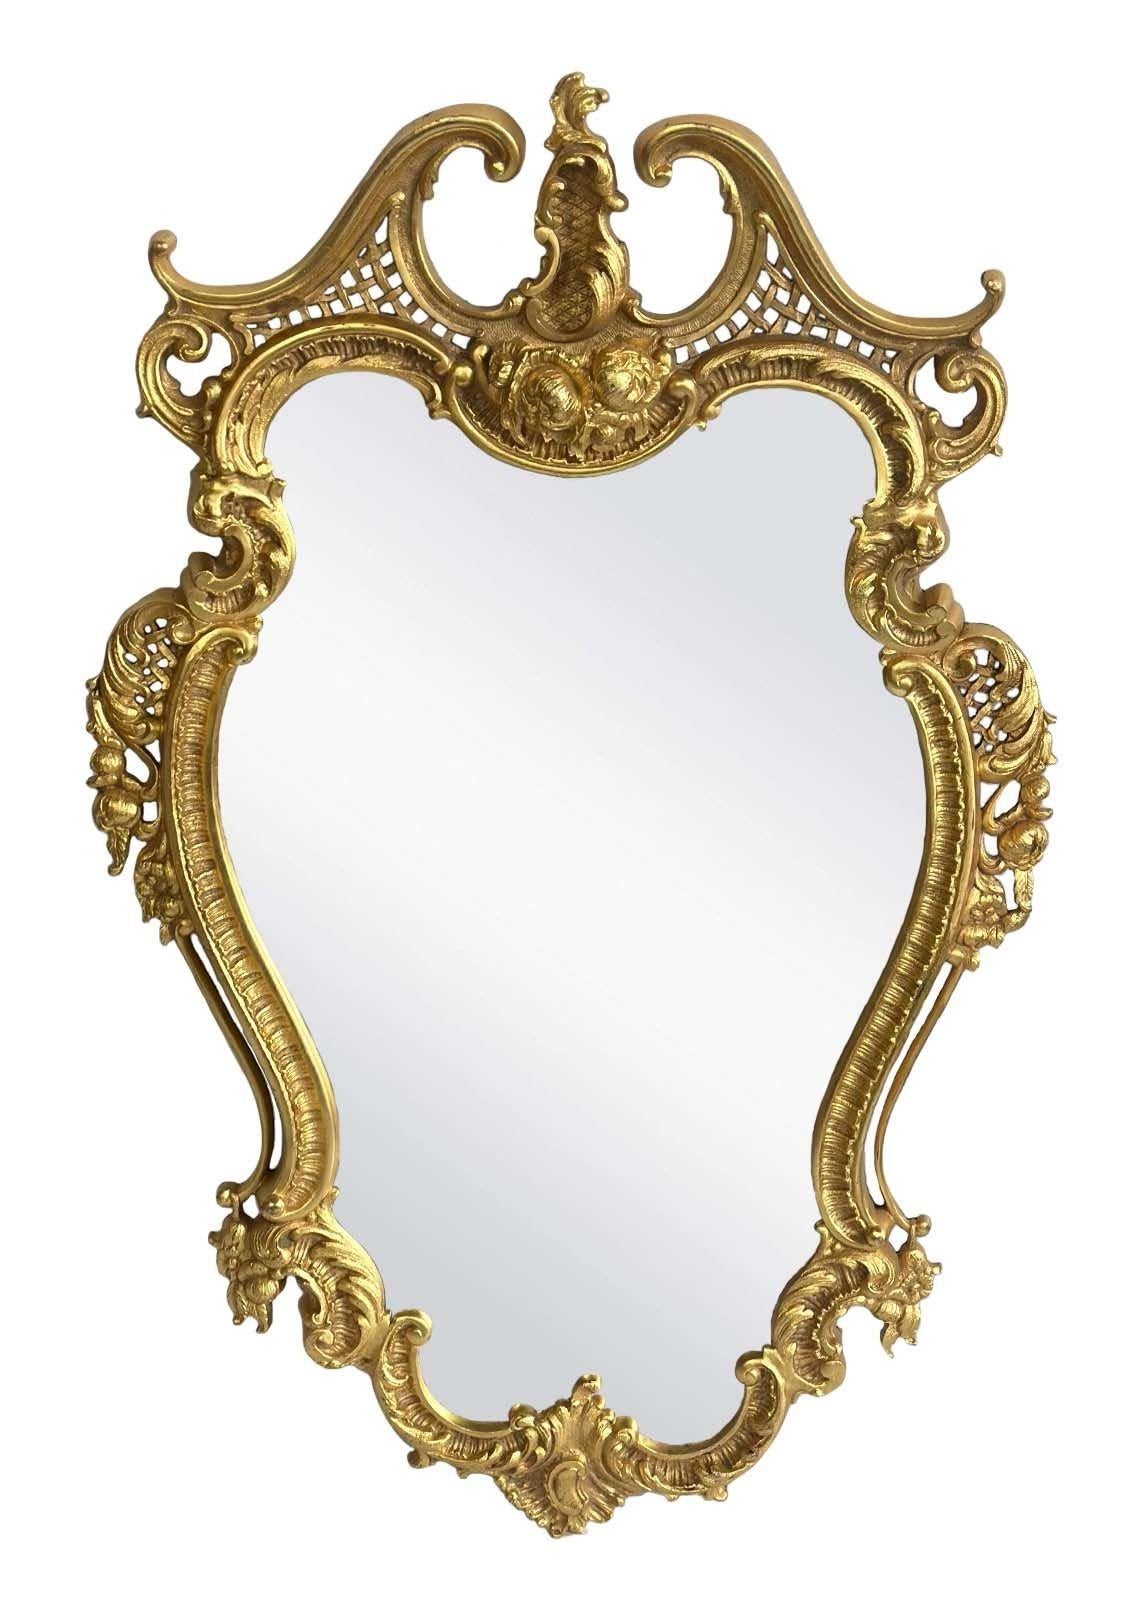 Ein prächtiges Paar Spiegel im Louis-XV-Stil aus reicher D'ore-Bronze mit floralen und blattartigen Motiven rundum. Hergestellt in Frankreich im frühen 20. Jahrhundert.
Abmessungen:
35 